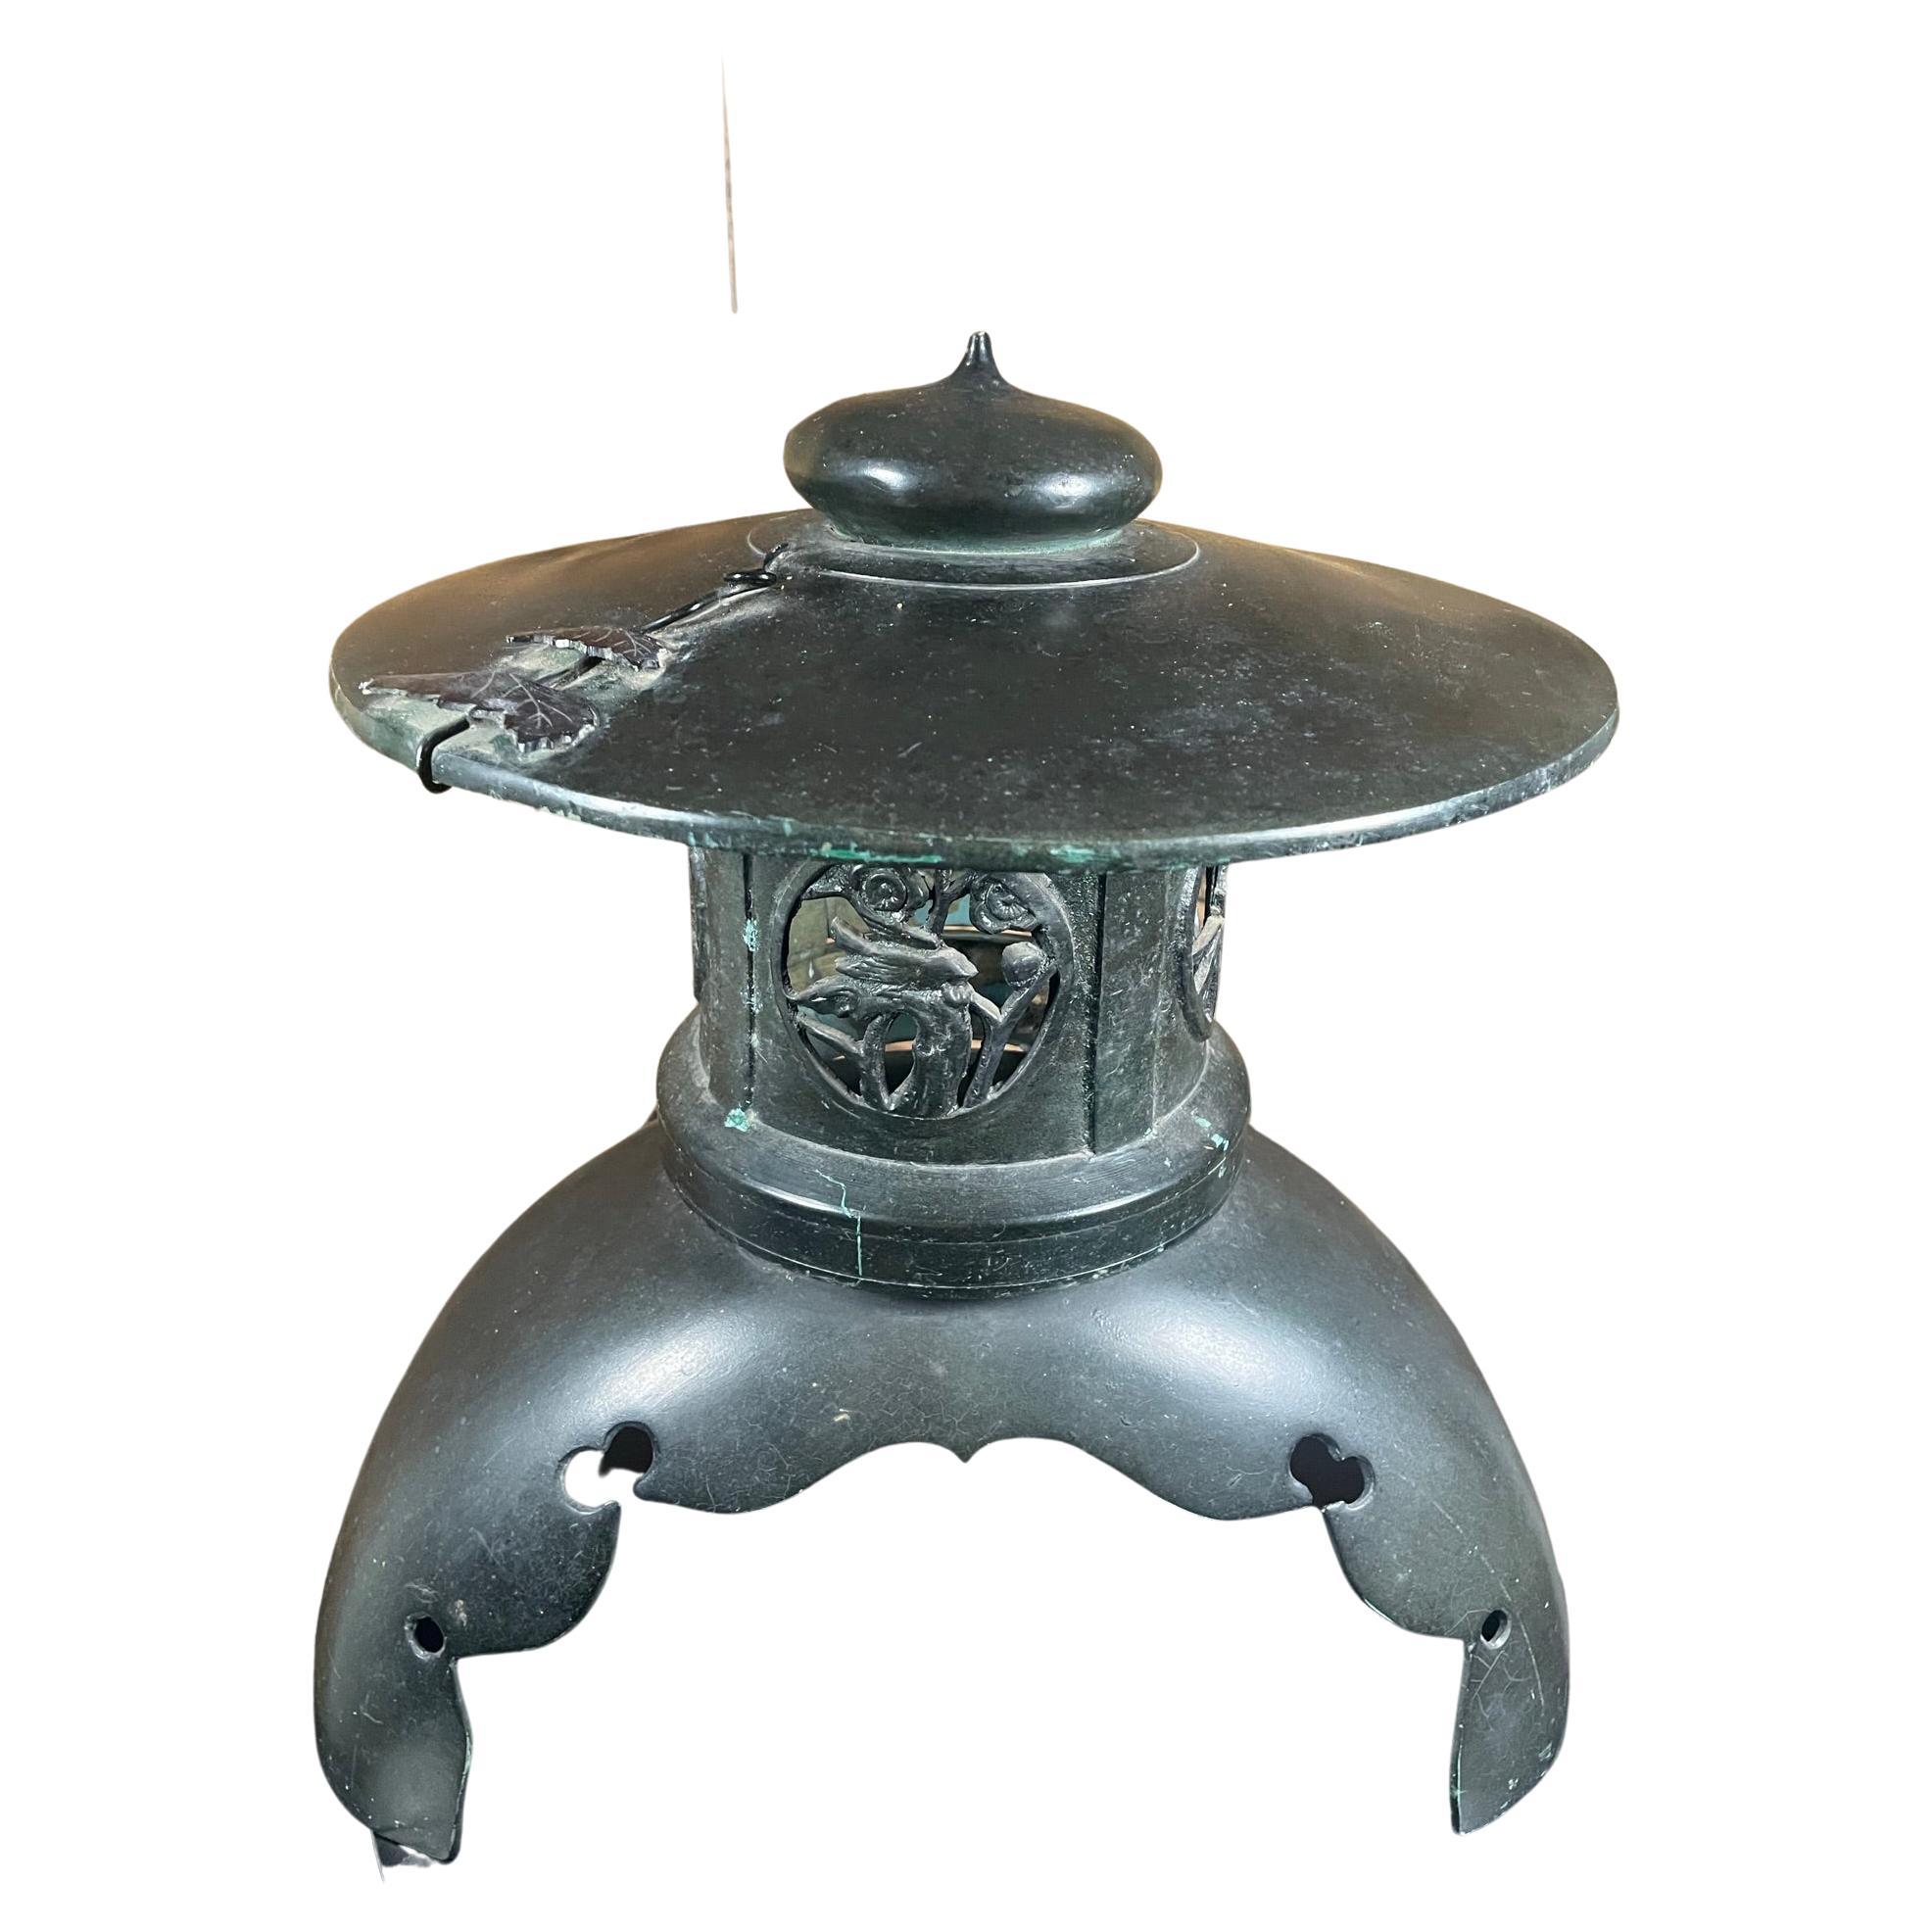 Grande lanterne japonaise ancienne de 18 pouces en bronze avec détails fins